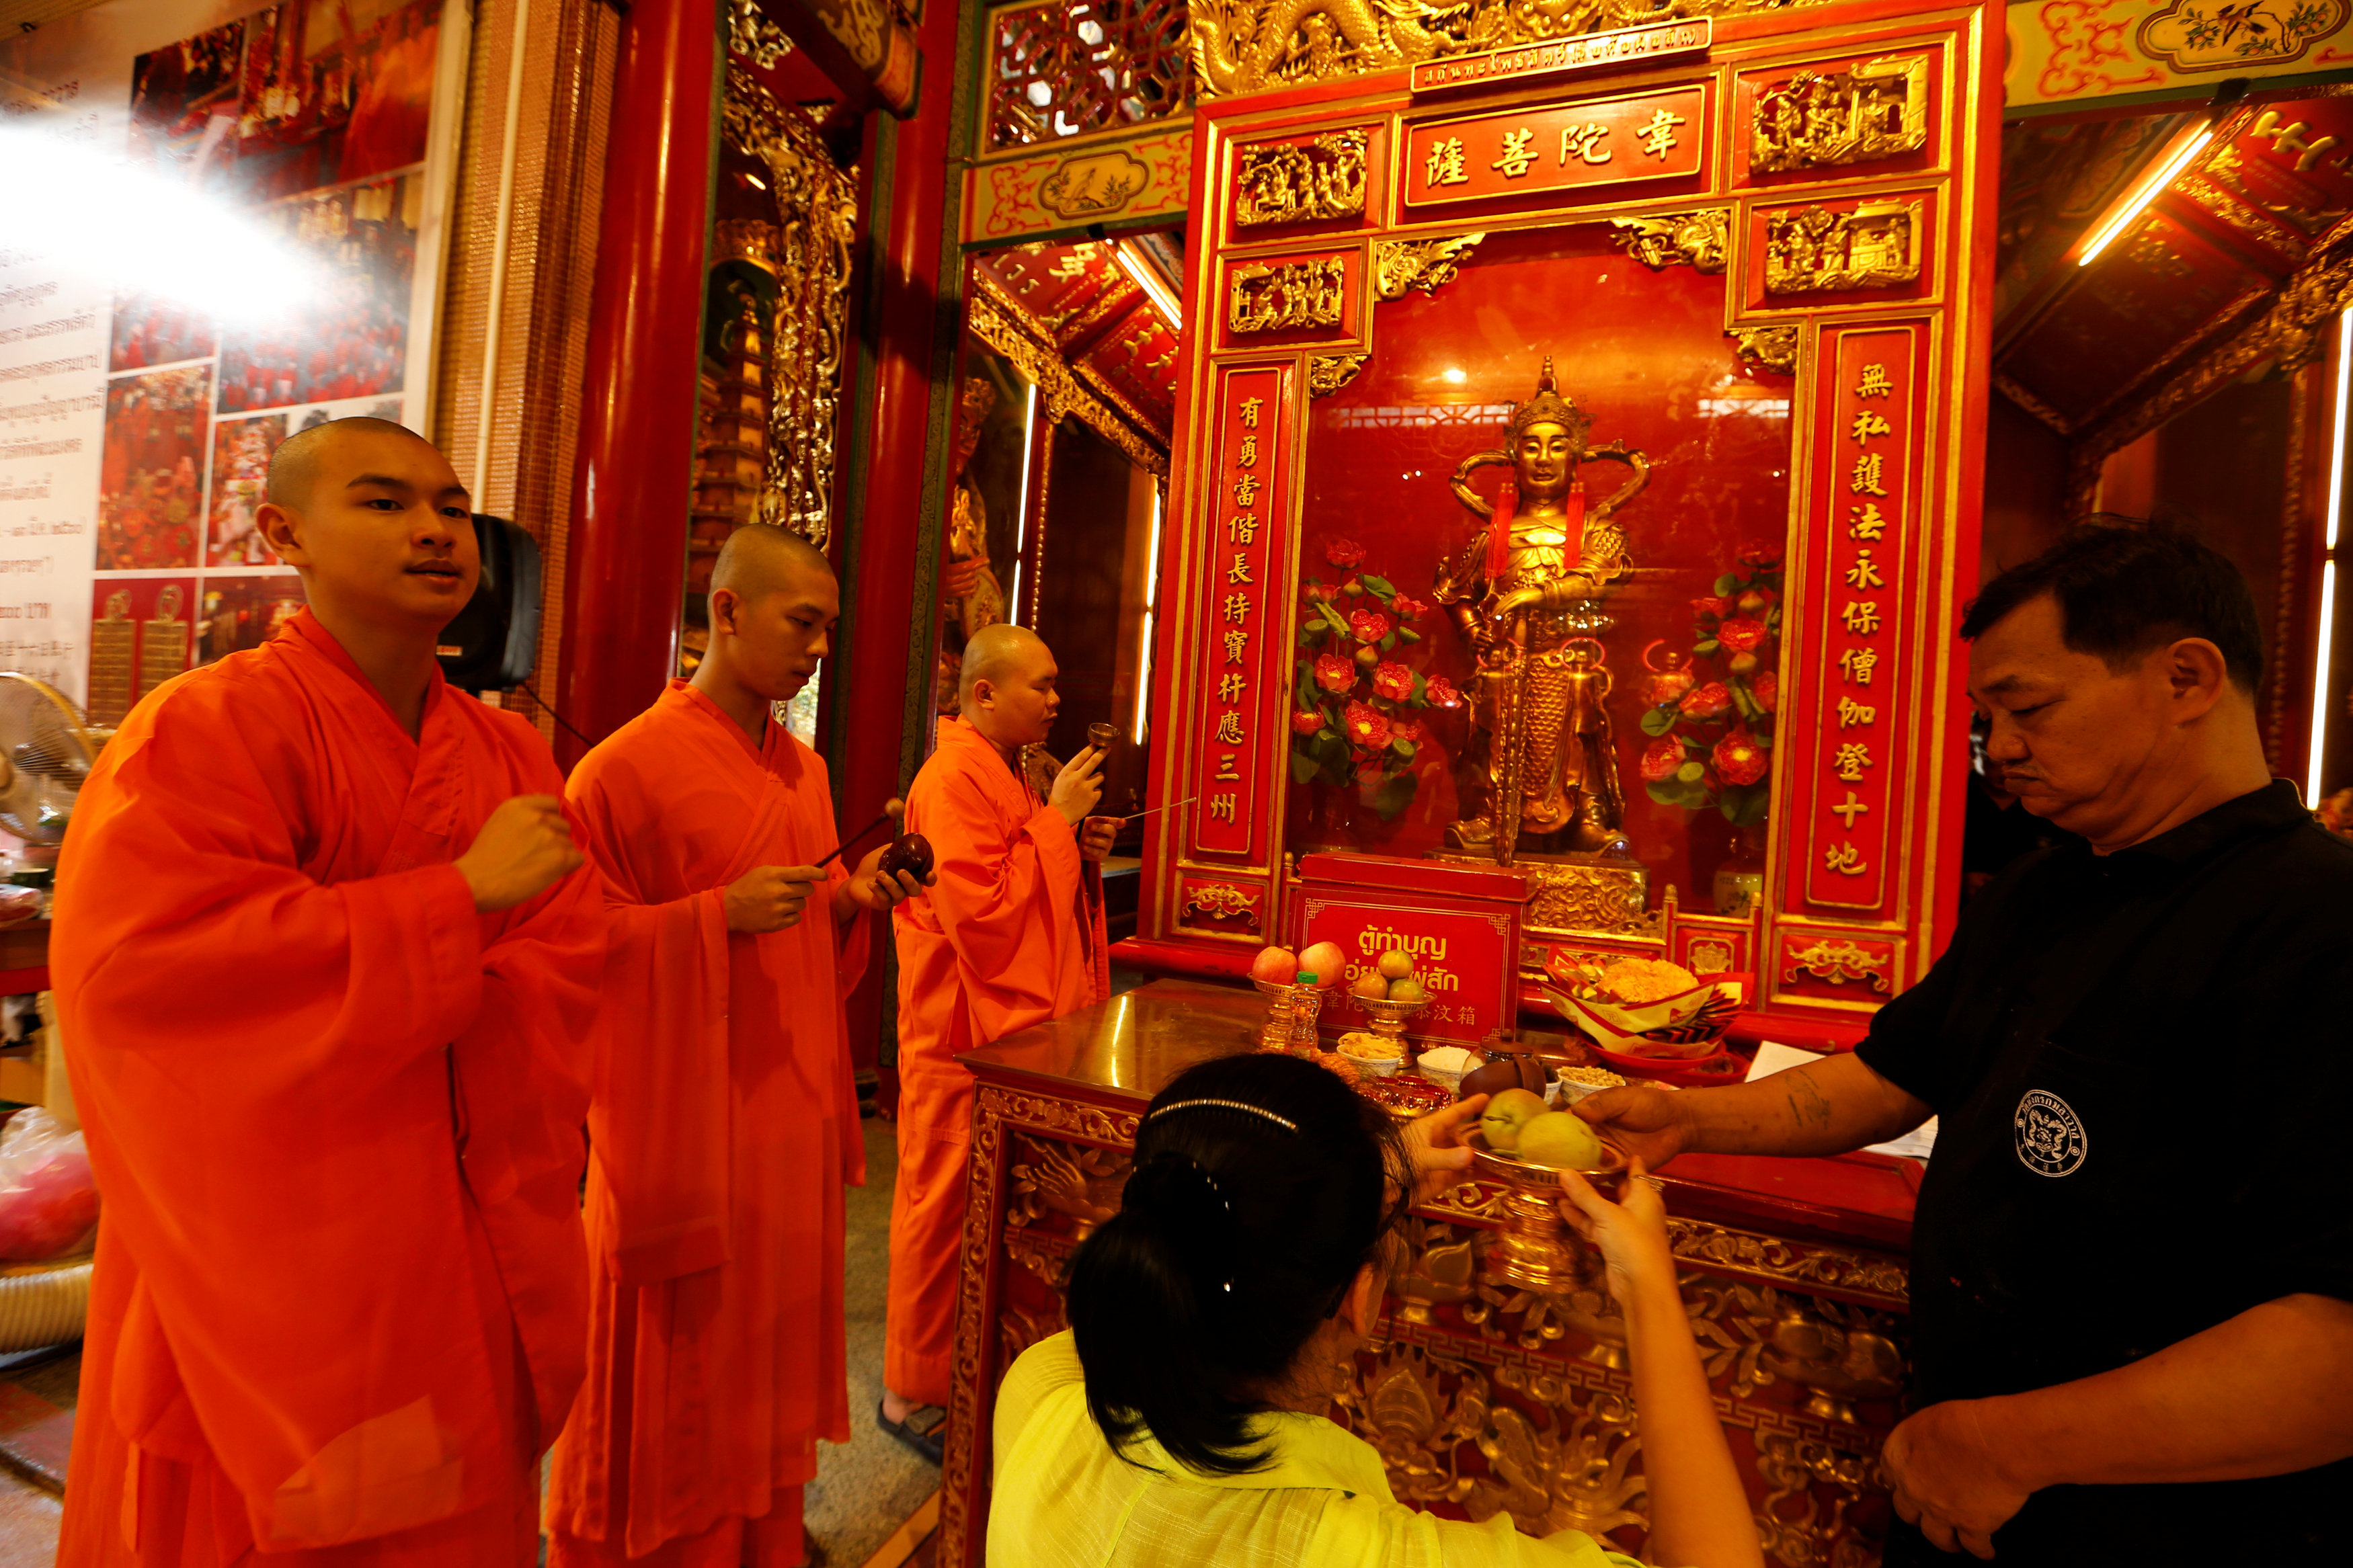 سيدة تصلى فى معبد بوذى بتايلاند احتفالًا بالسنة الصينية الجديدة